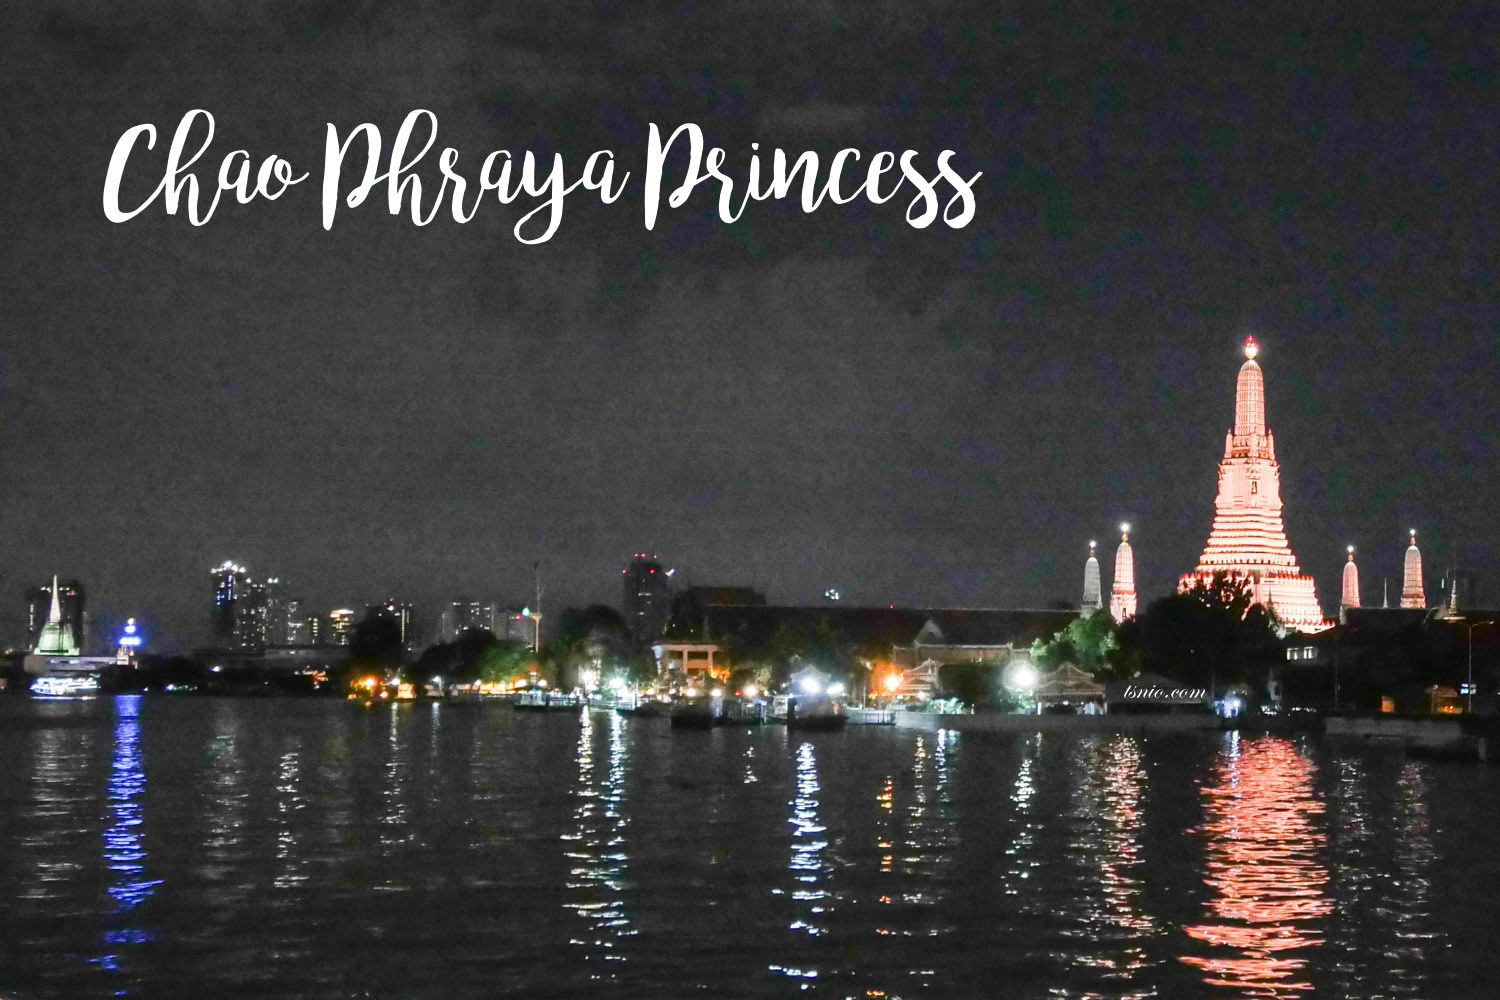 曼谷昭披耶河遊船晚宴 公主號  Chao Phraya Princess